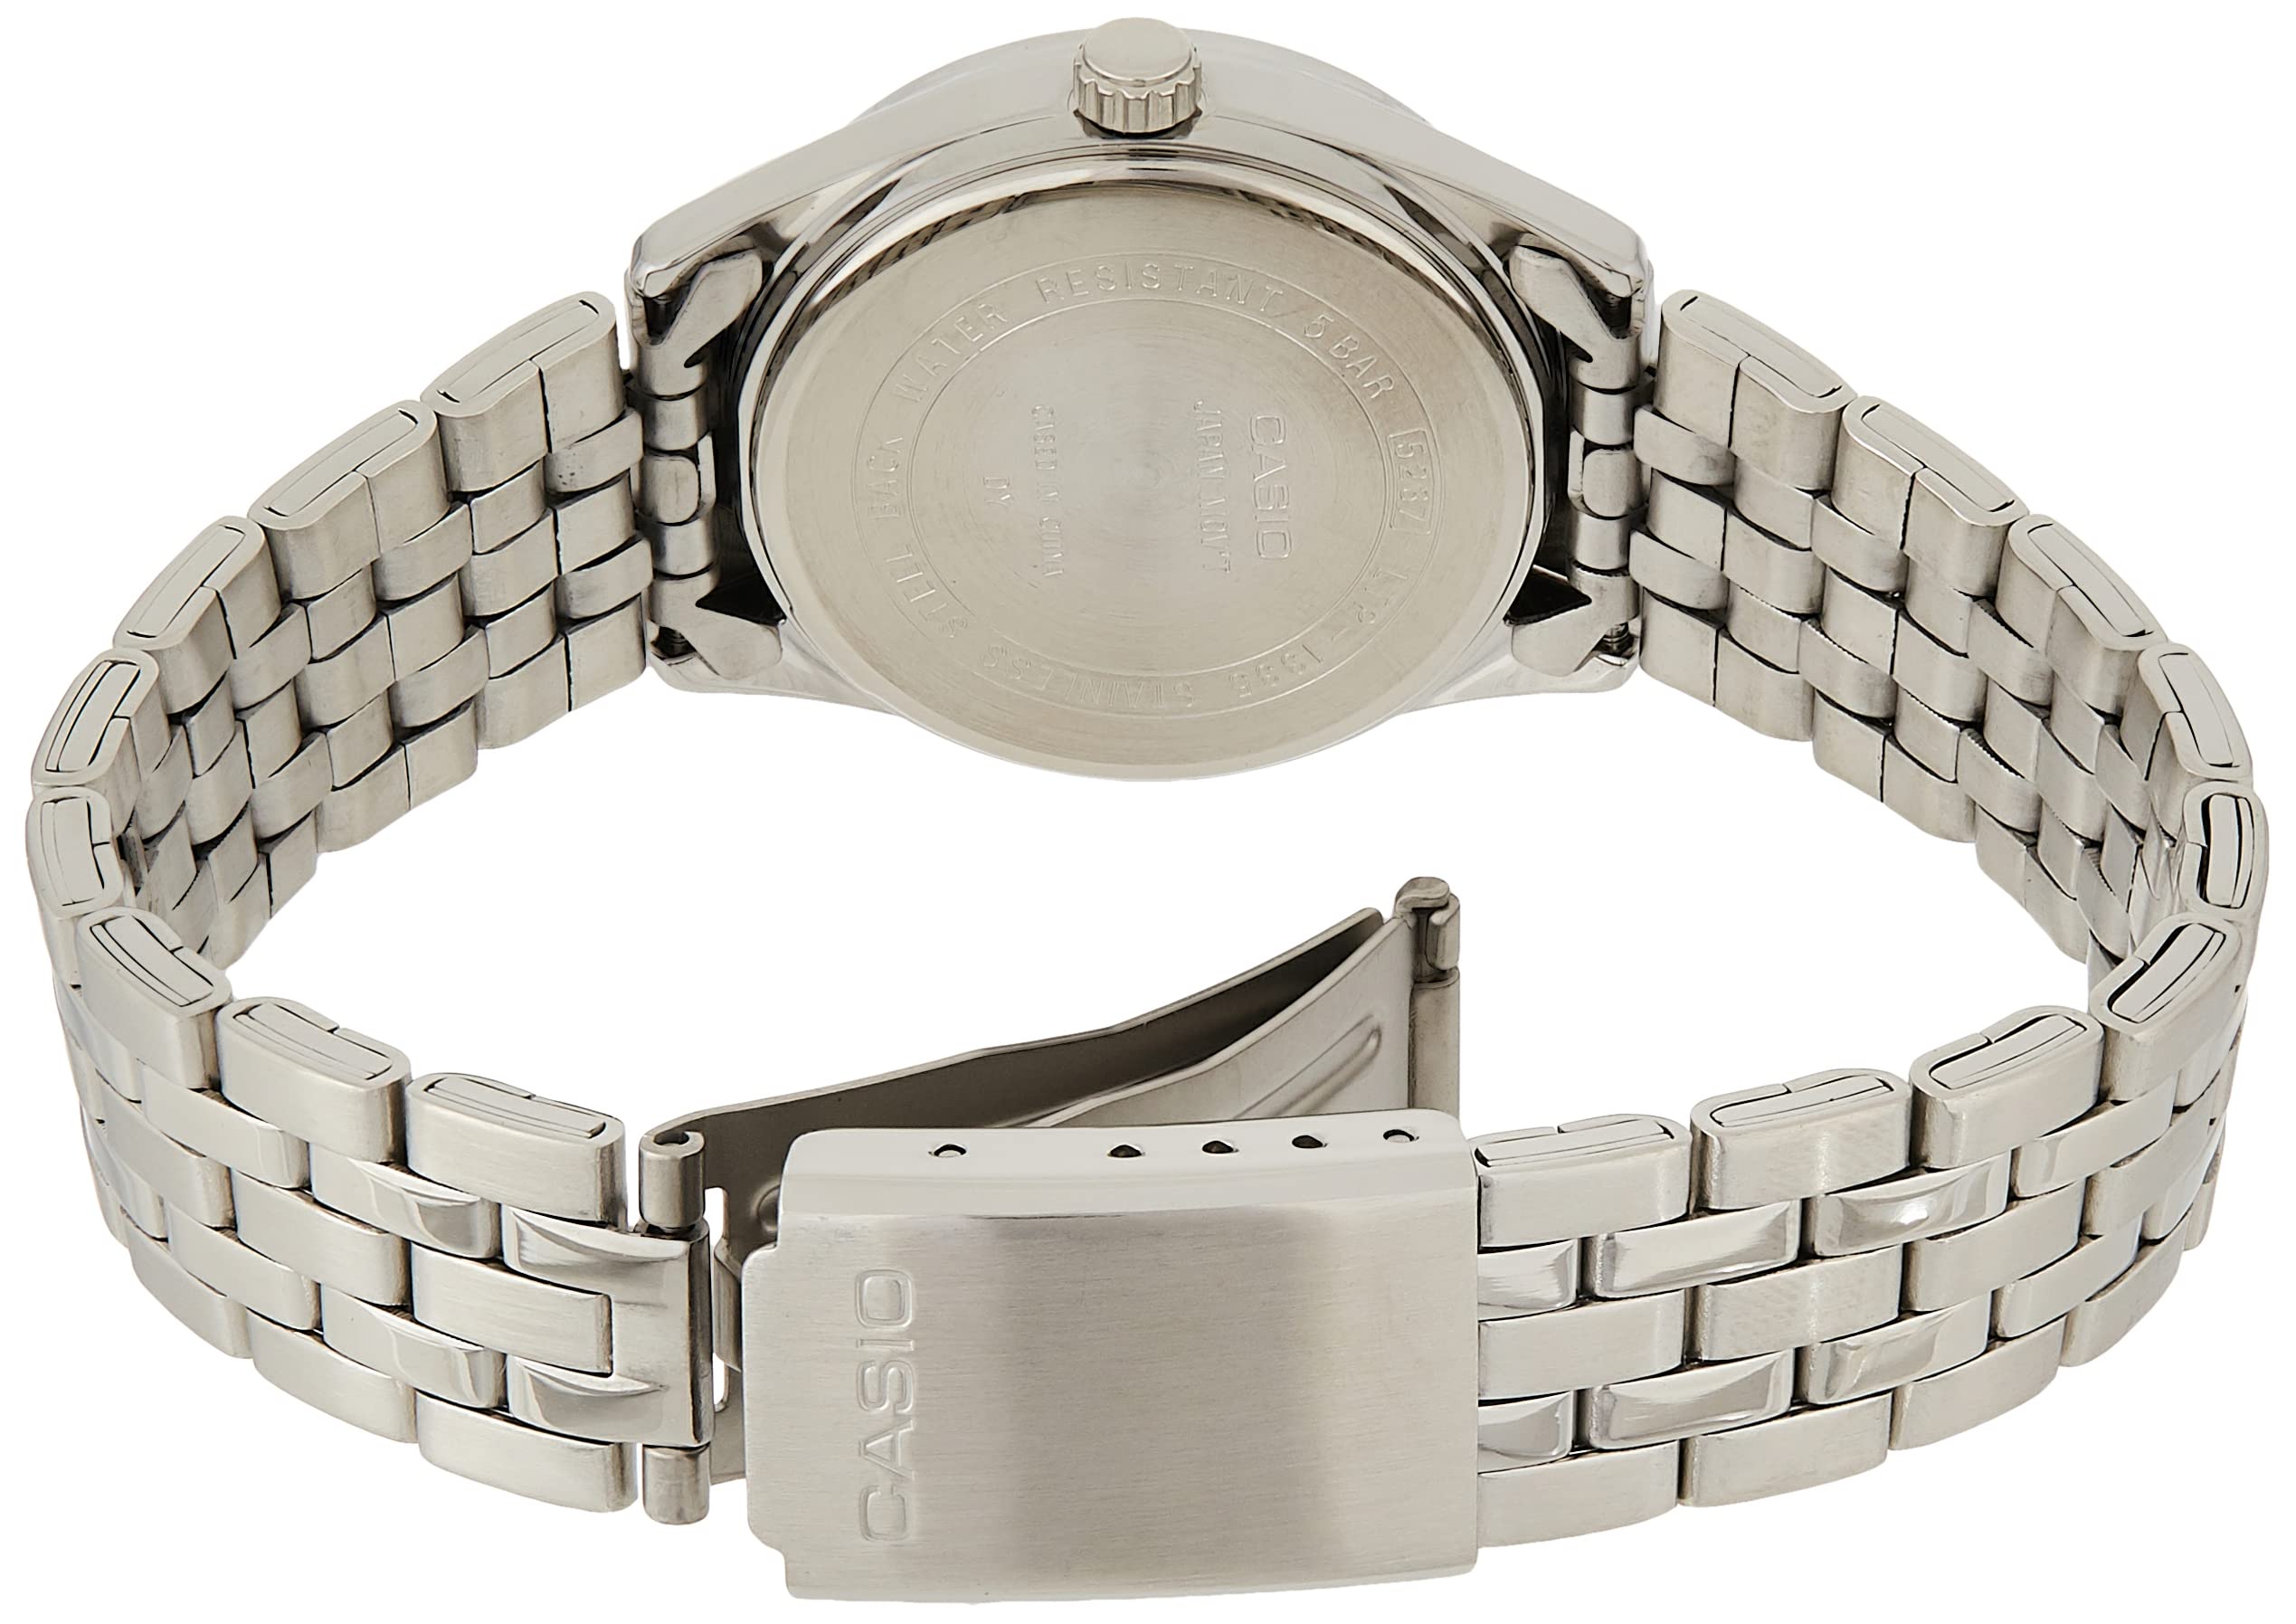 Casio Dress Silver Watch LTP1335D-1A